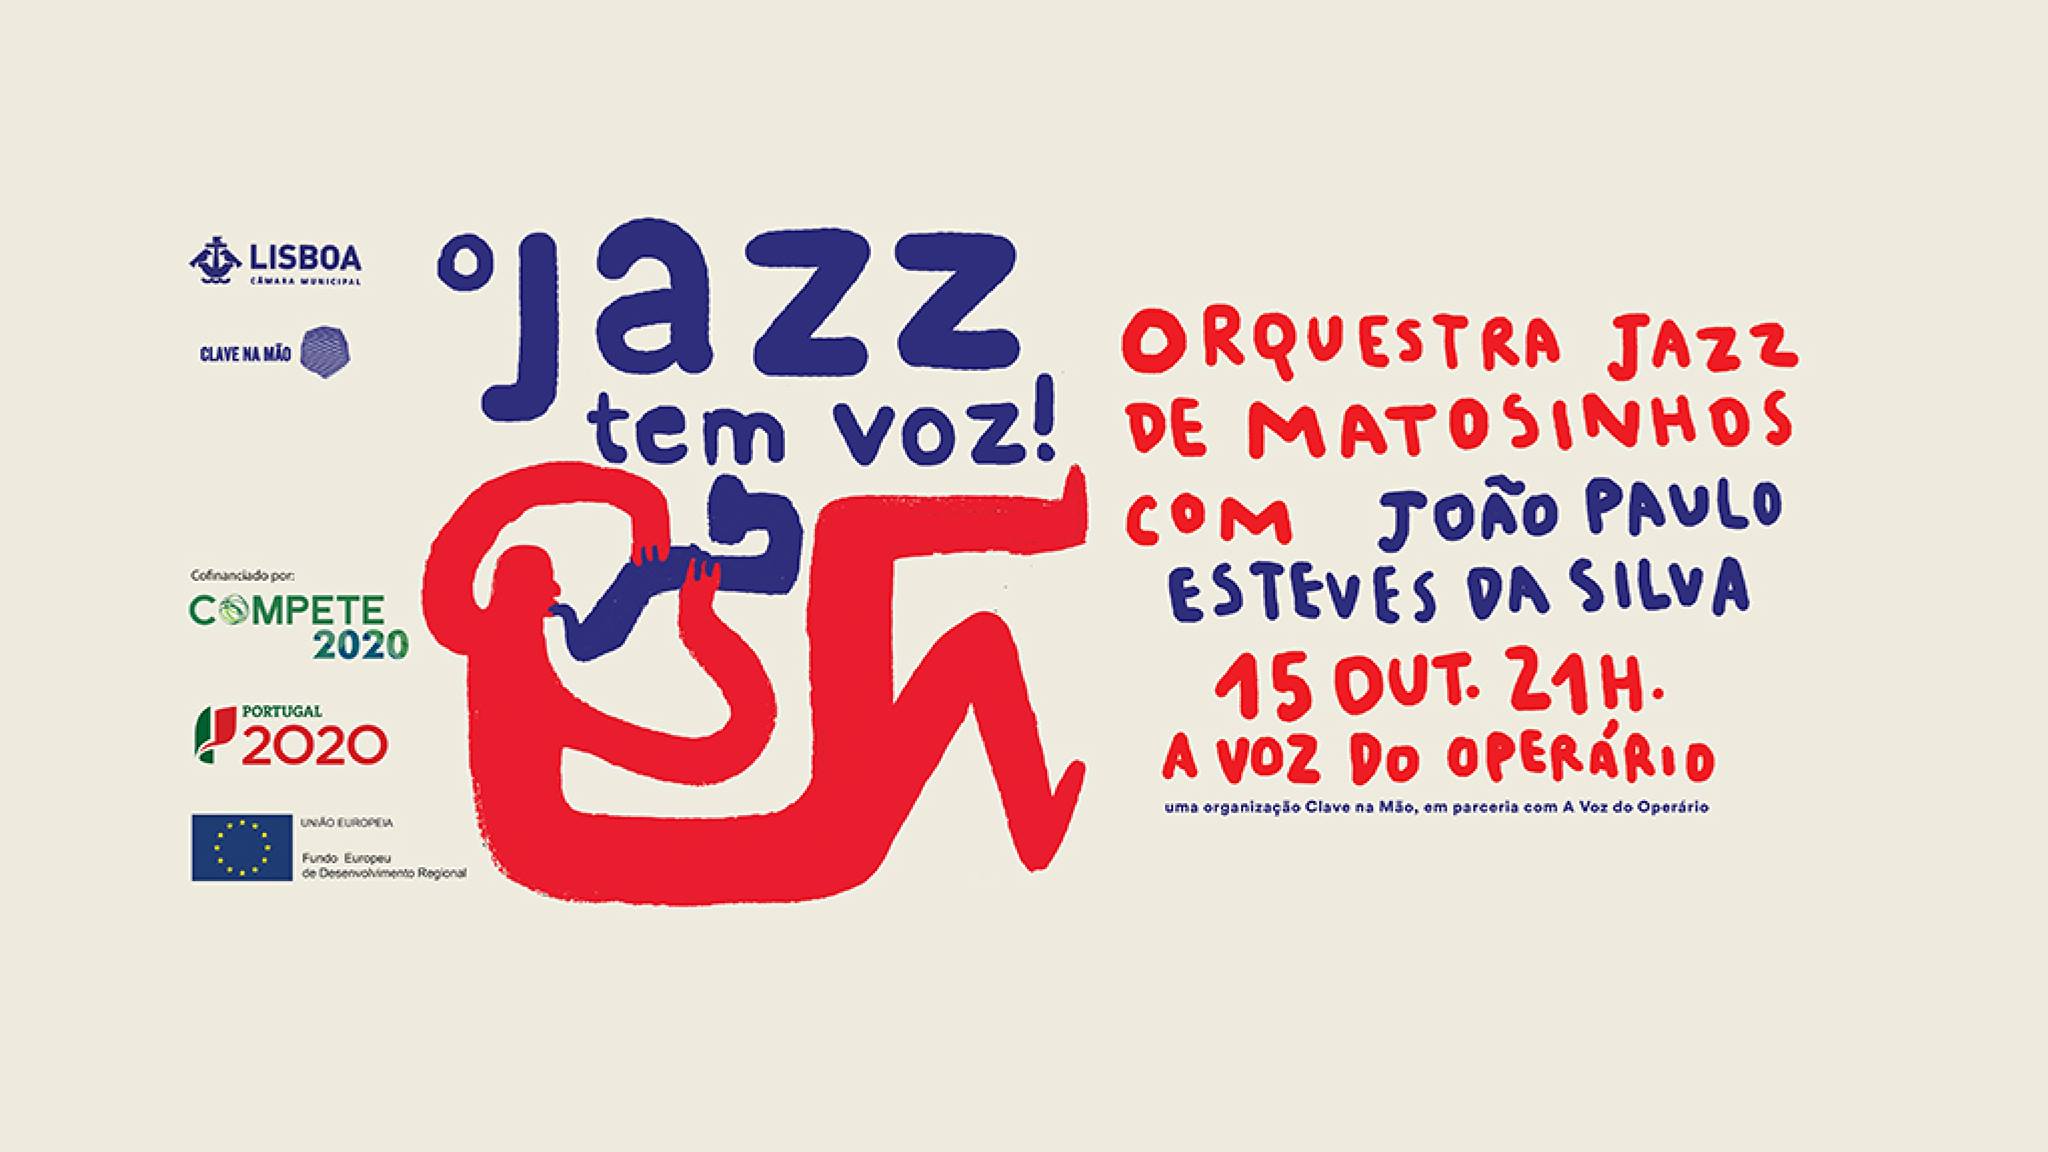 O Jazz tem Voz! - Orquestra Jazz de Matosinhos com João Paulo Esteves da Silva